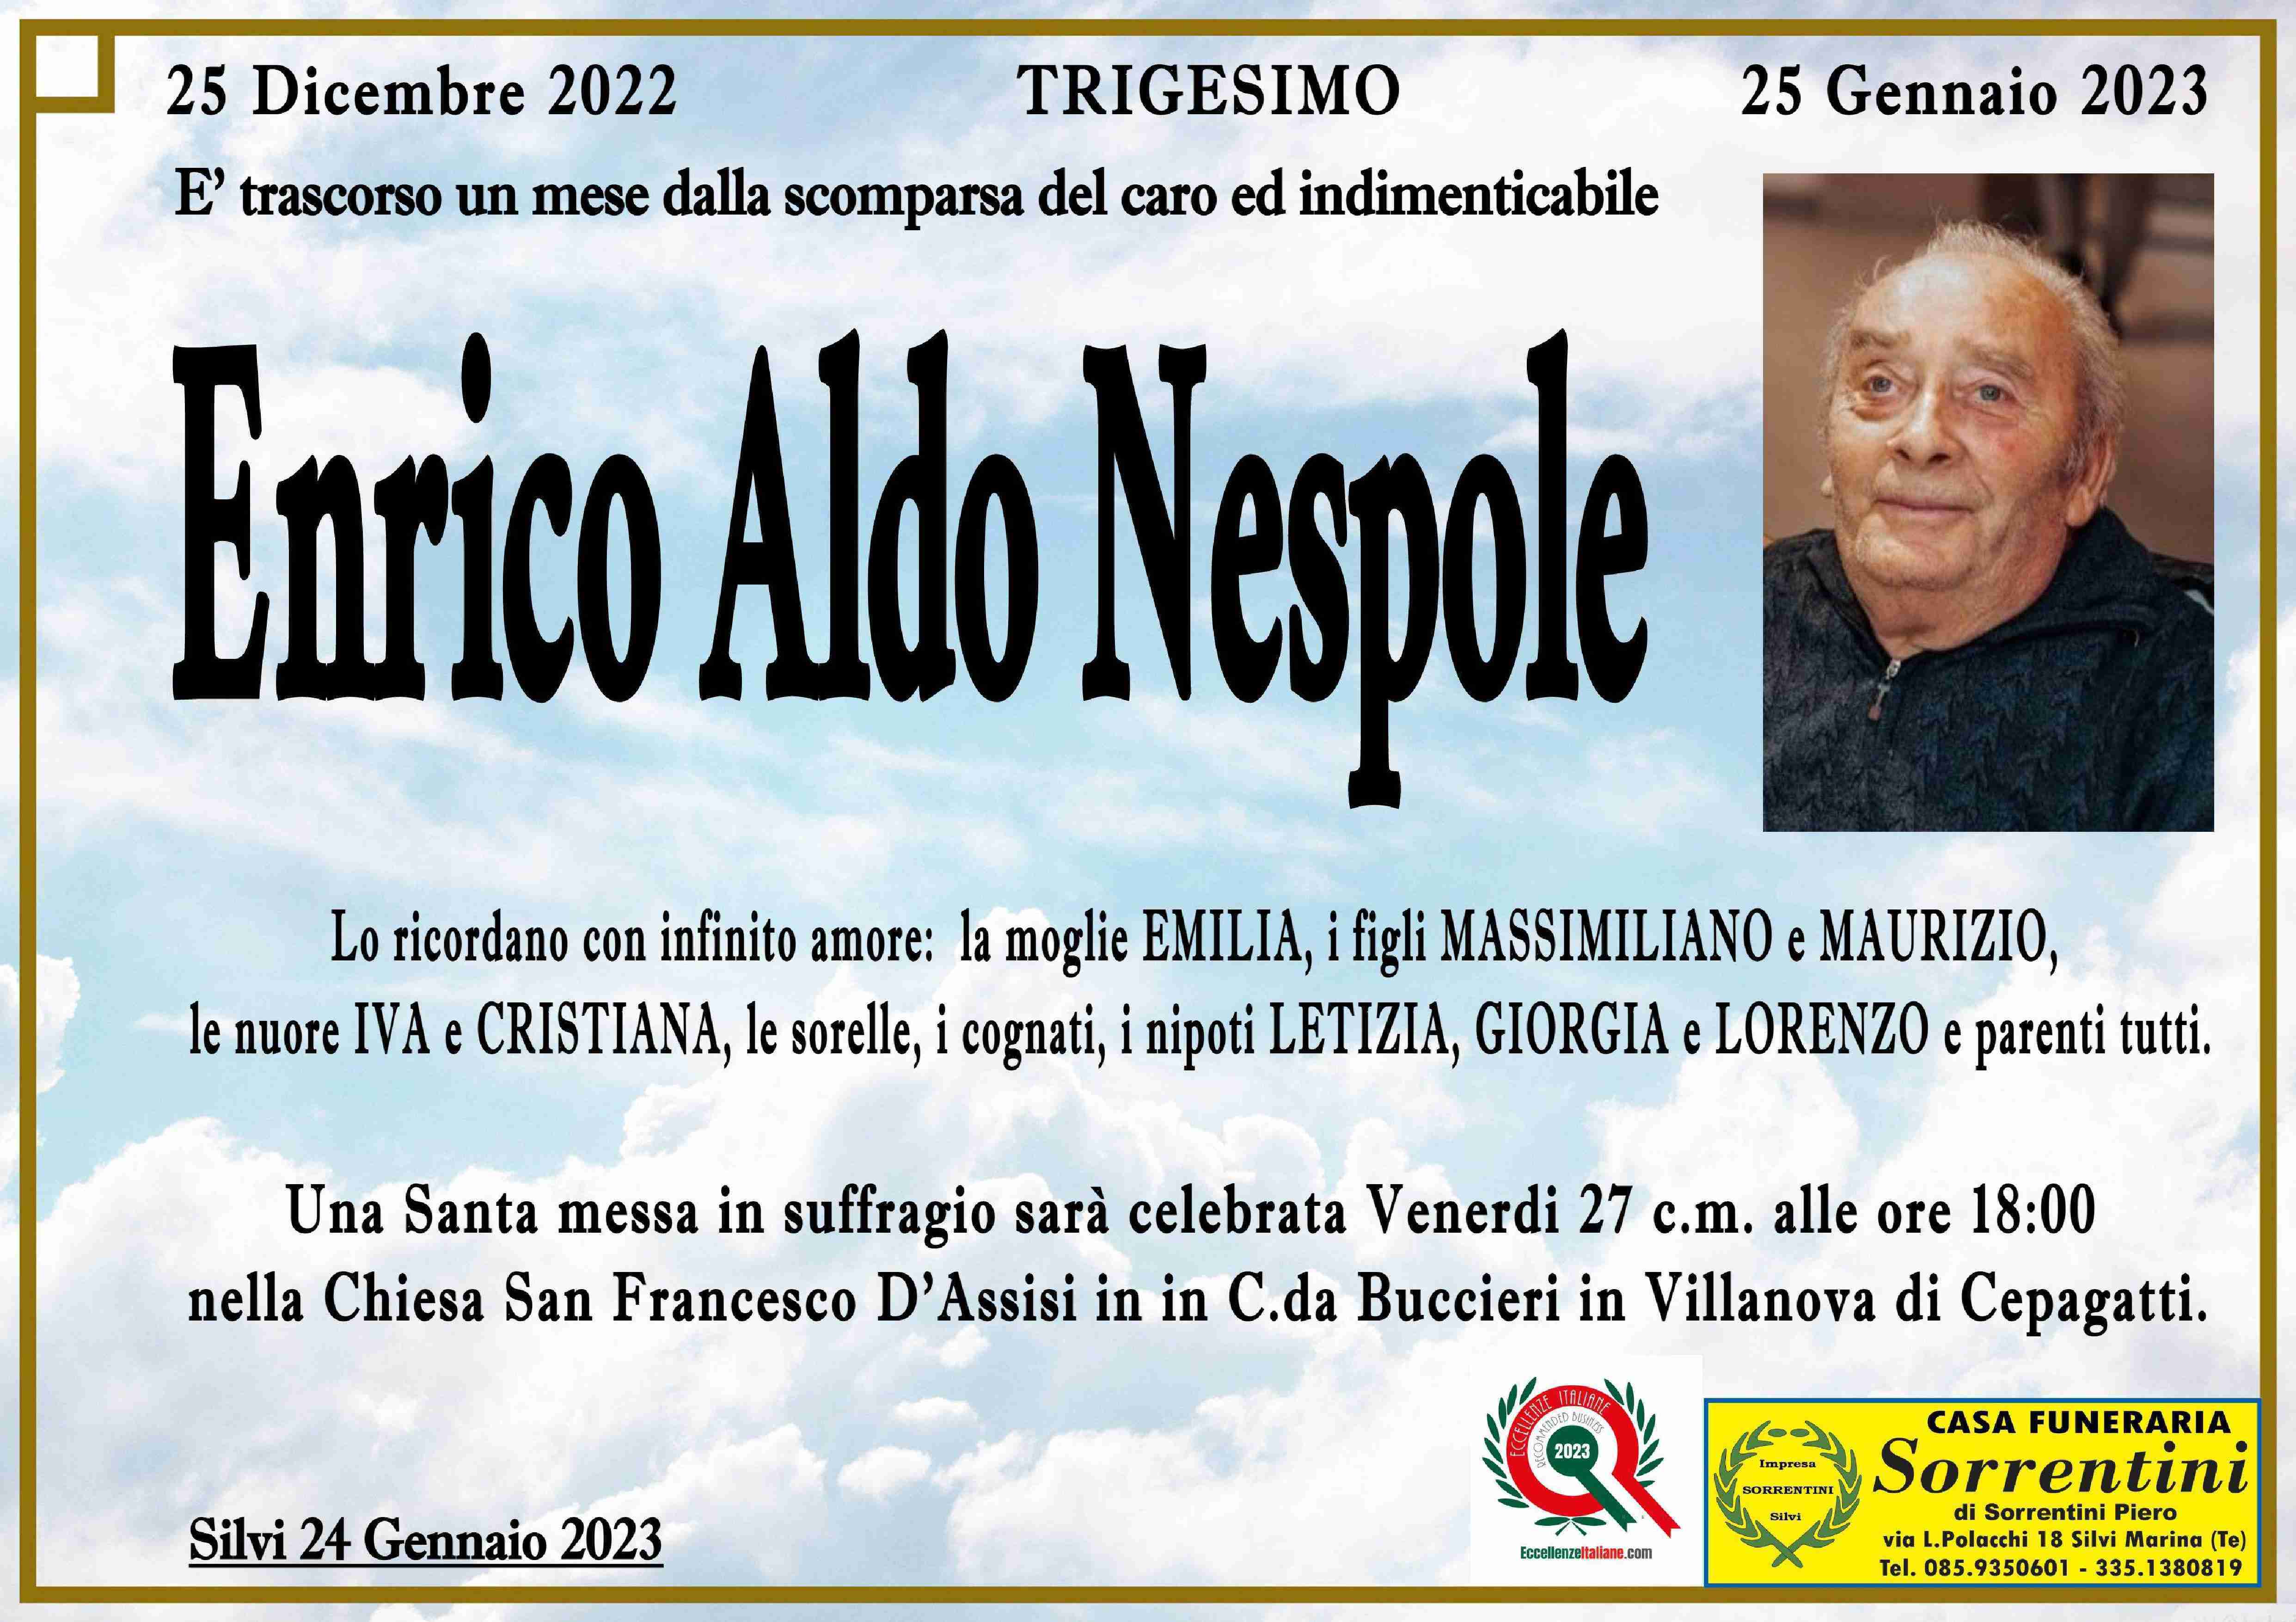 Enrico Aldo Nespole